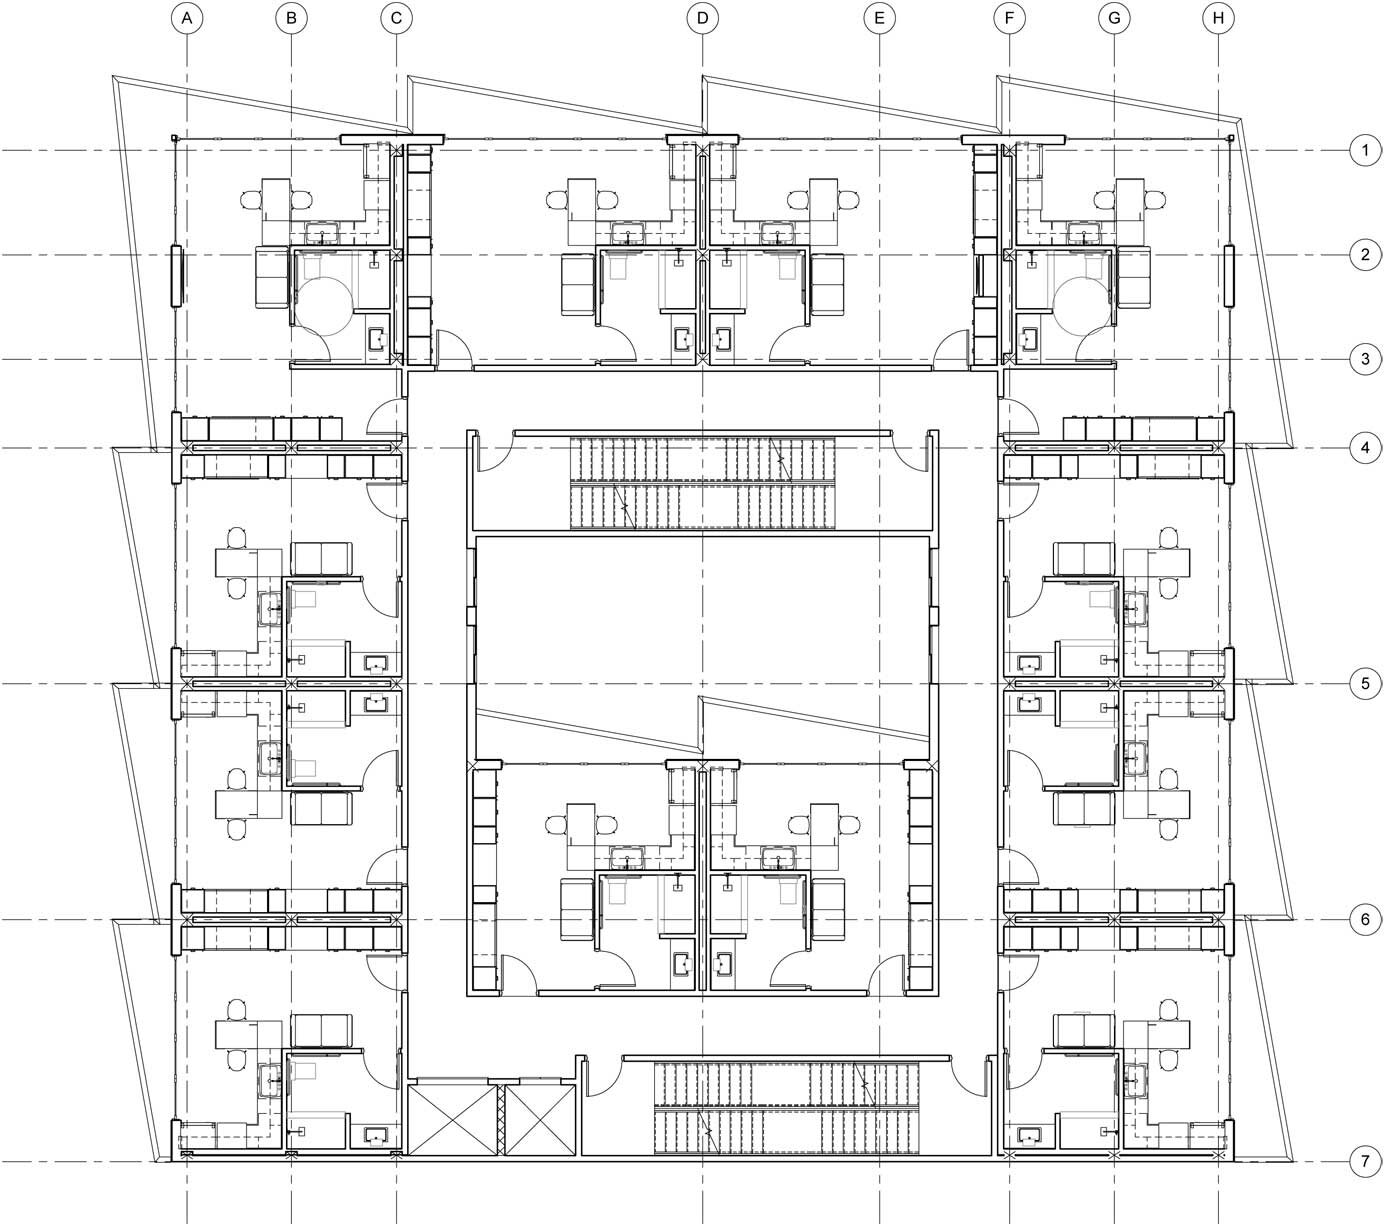 NYC-Micro-Dwellings-4th-Floor-Plan.jpg